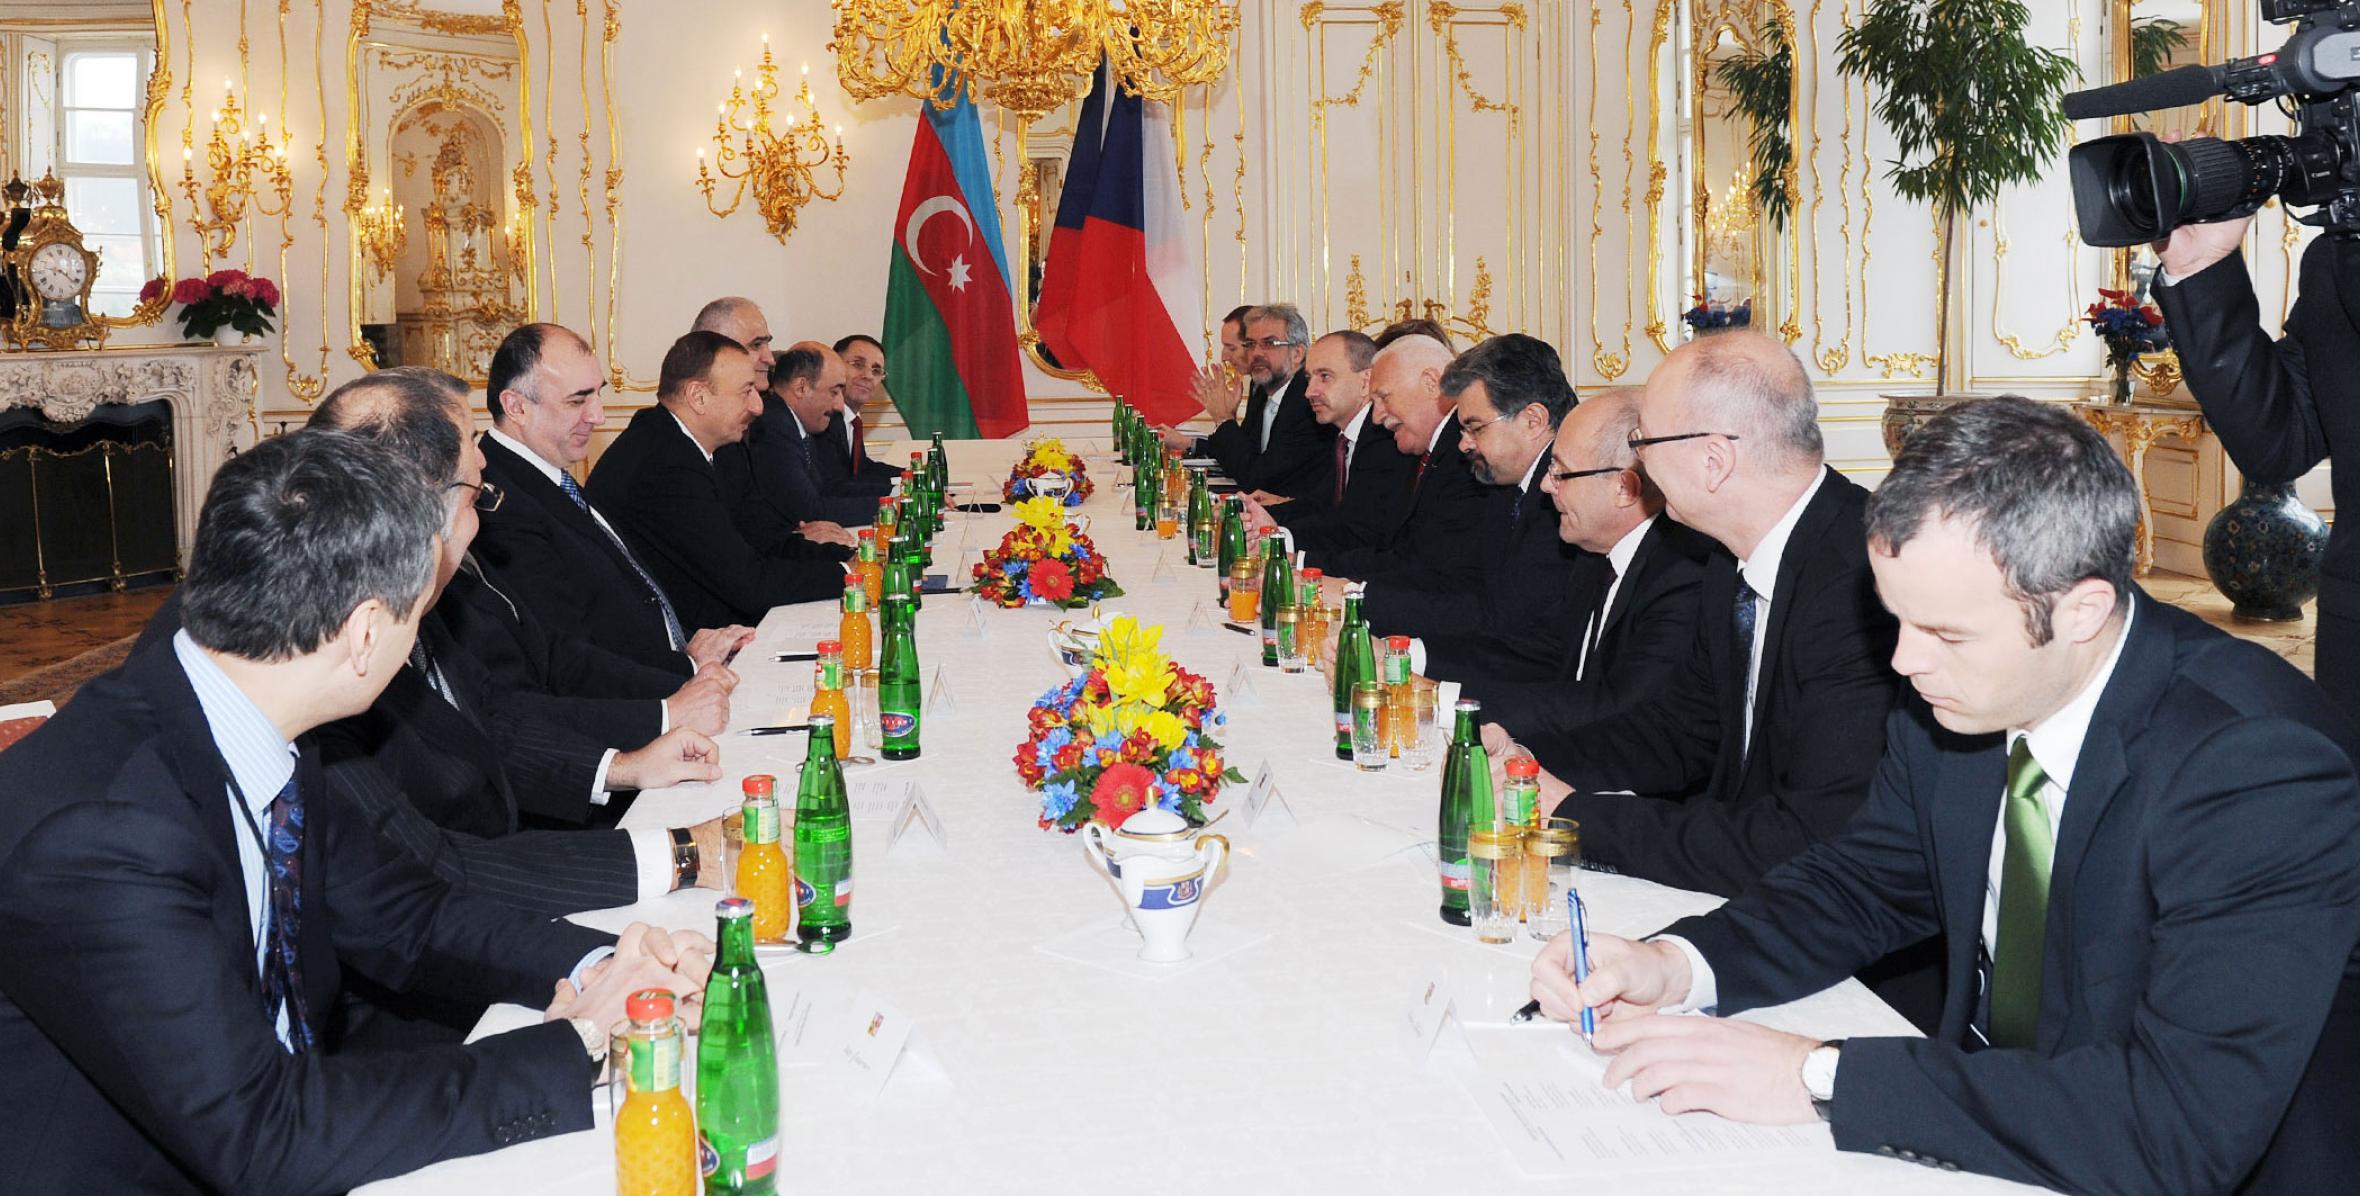 Состоялась встреча президентов Азербайджана и Чехии в расширенном составе